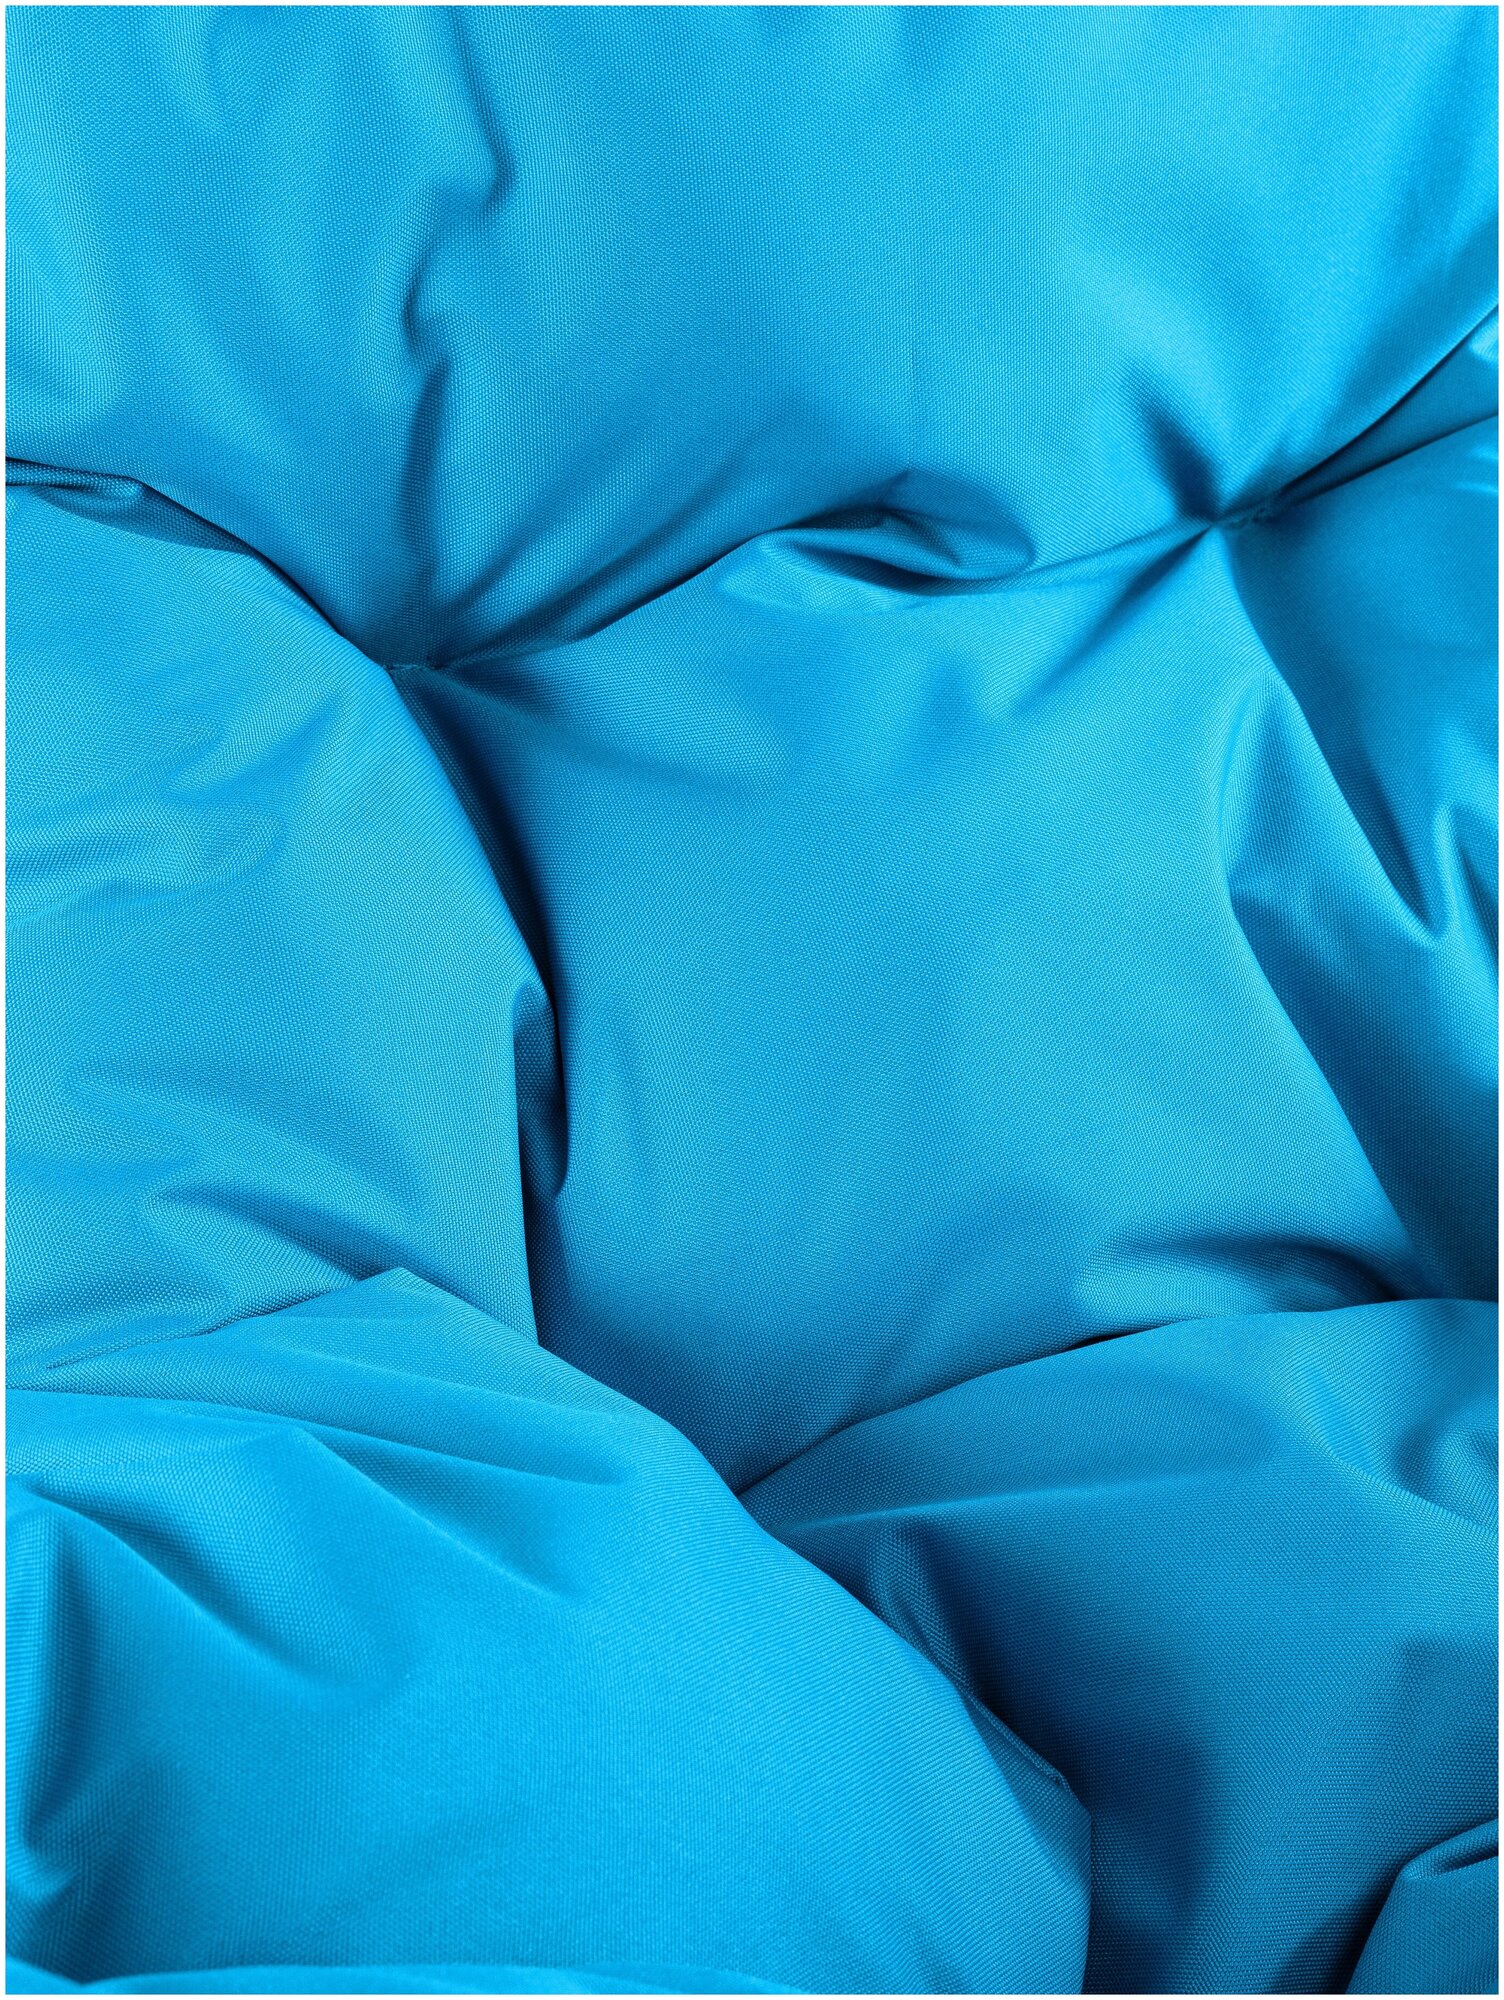 Подвесное кресло белое M-Group Капля лори ротанг 11550103, голубая подушка (без стойки) - фотография № 5